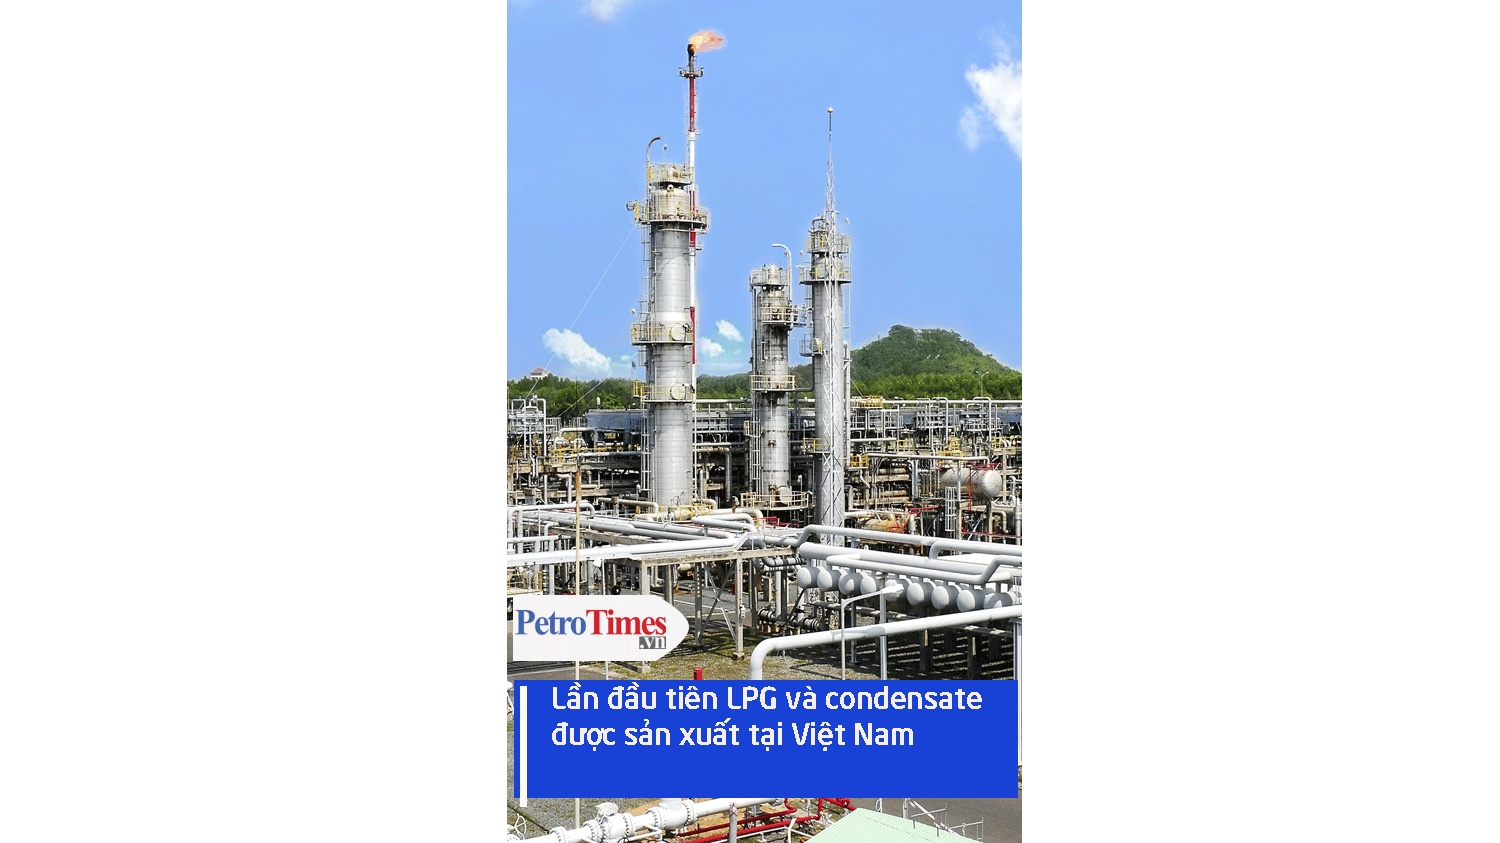 [Video] Lần đầu tiên LPG và condensate được xuất bán tại Việt Nam